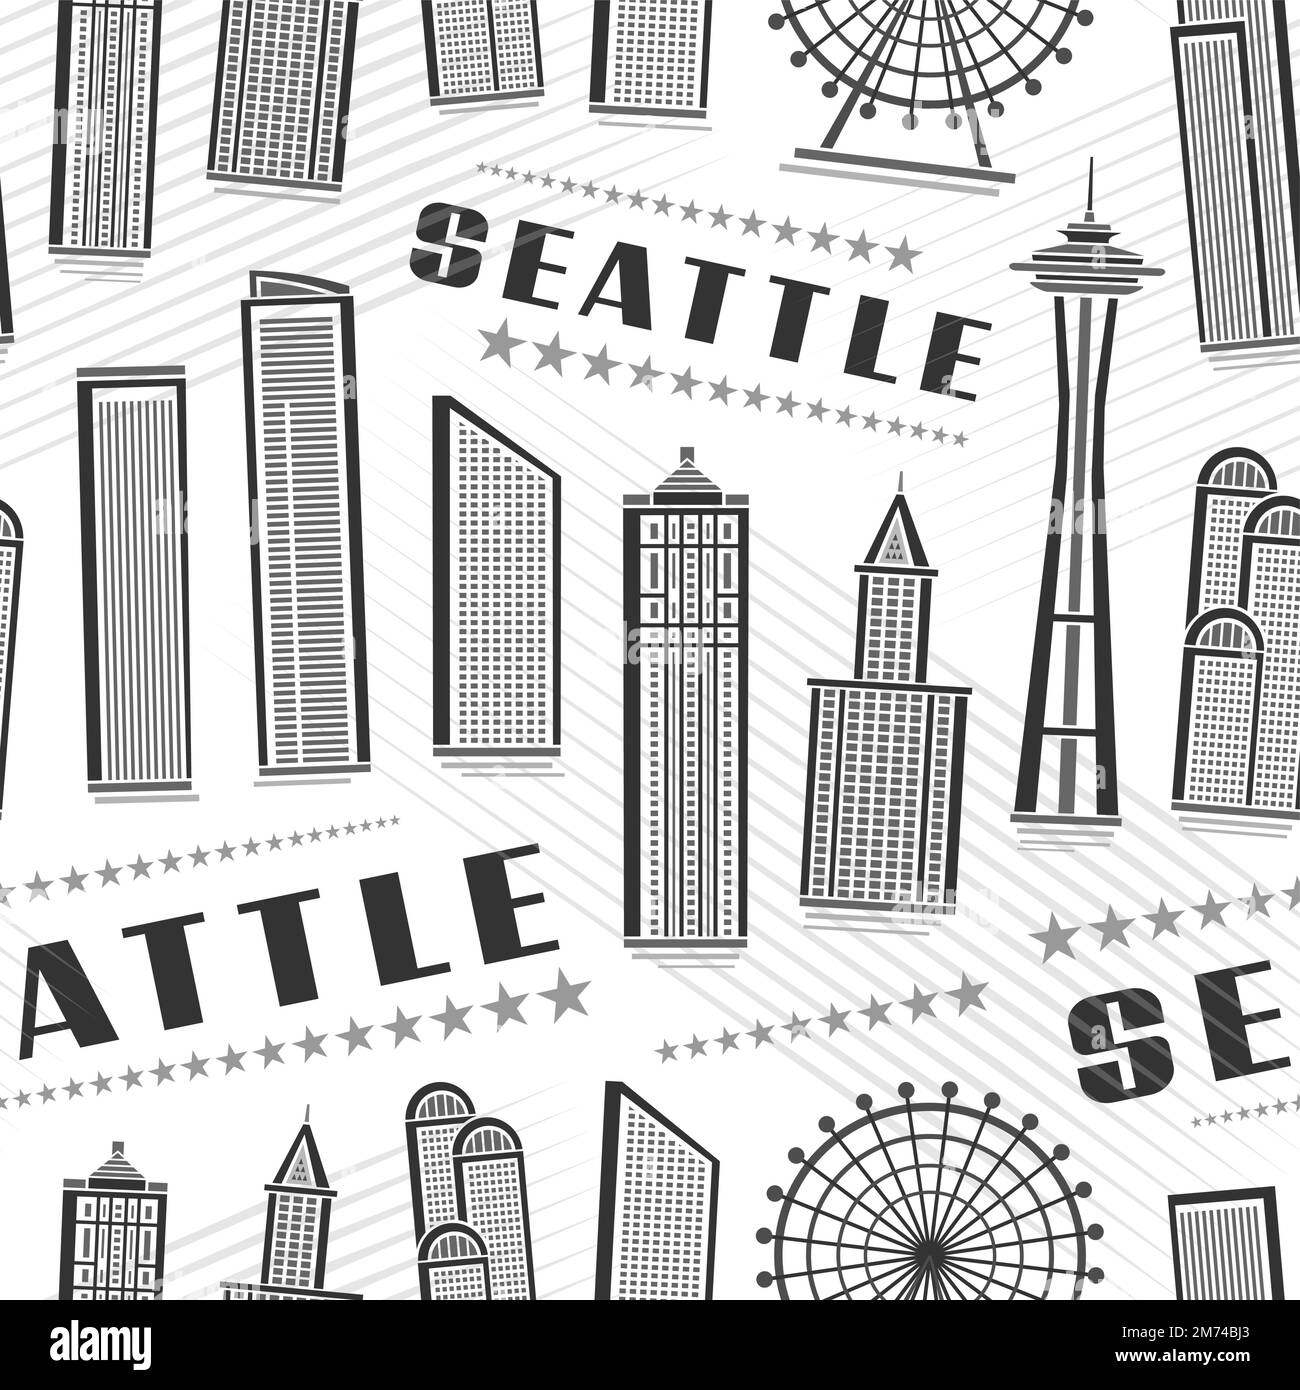 Vector Seattle Seamless Pattern, quadratischer Wiederholungshintergrund mit Illustration der berühmten stadt seattle auf weißem Hintergrund für Geschenkpapier, Monoc Stock Vektor